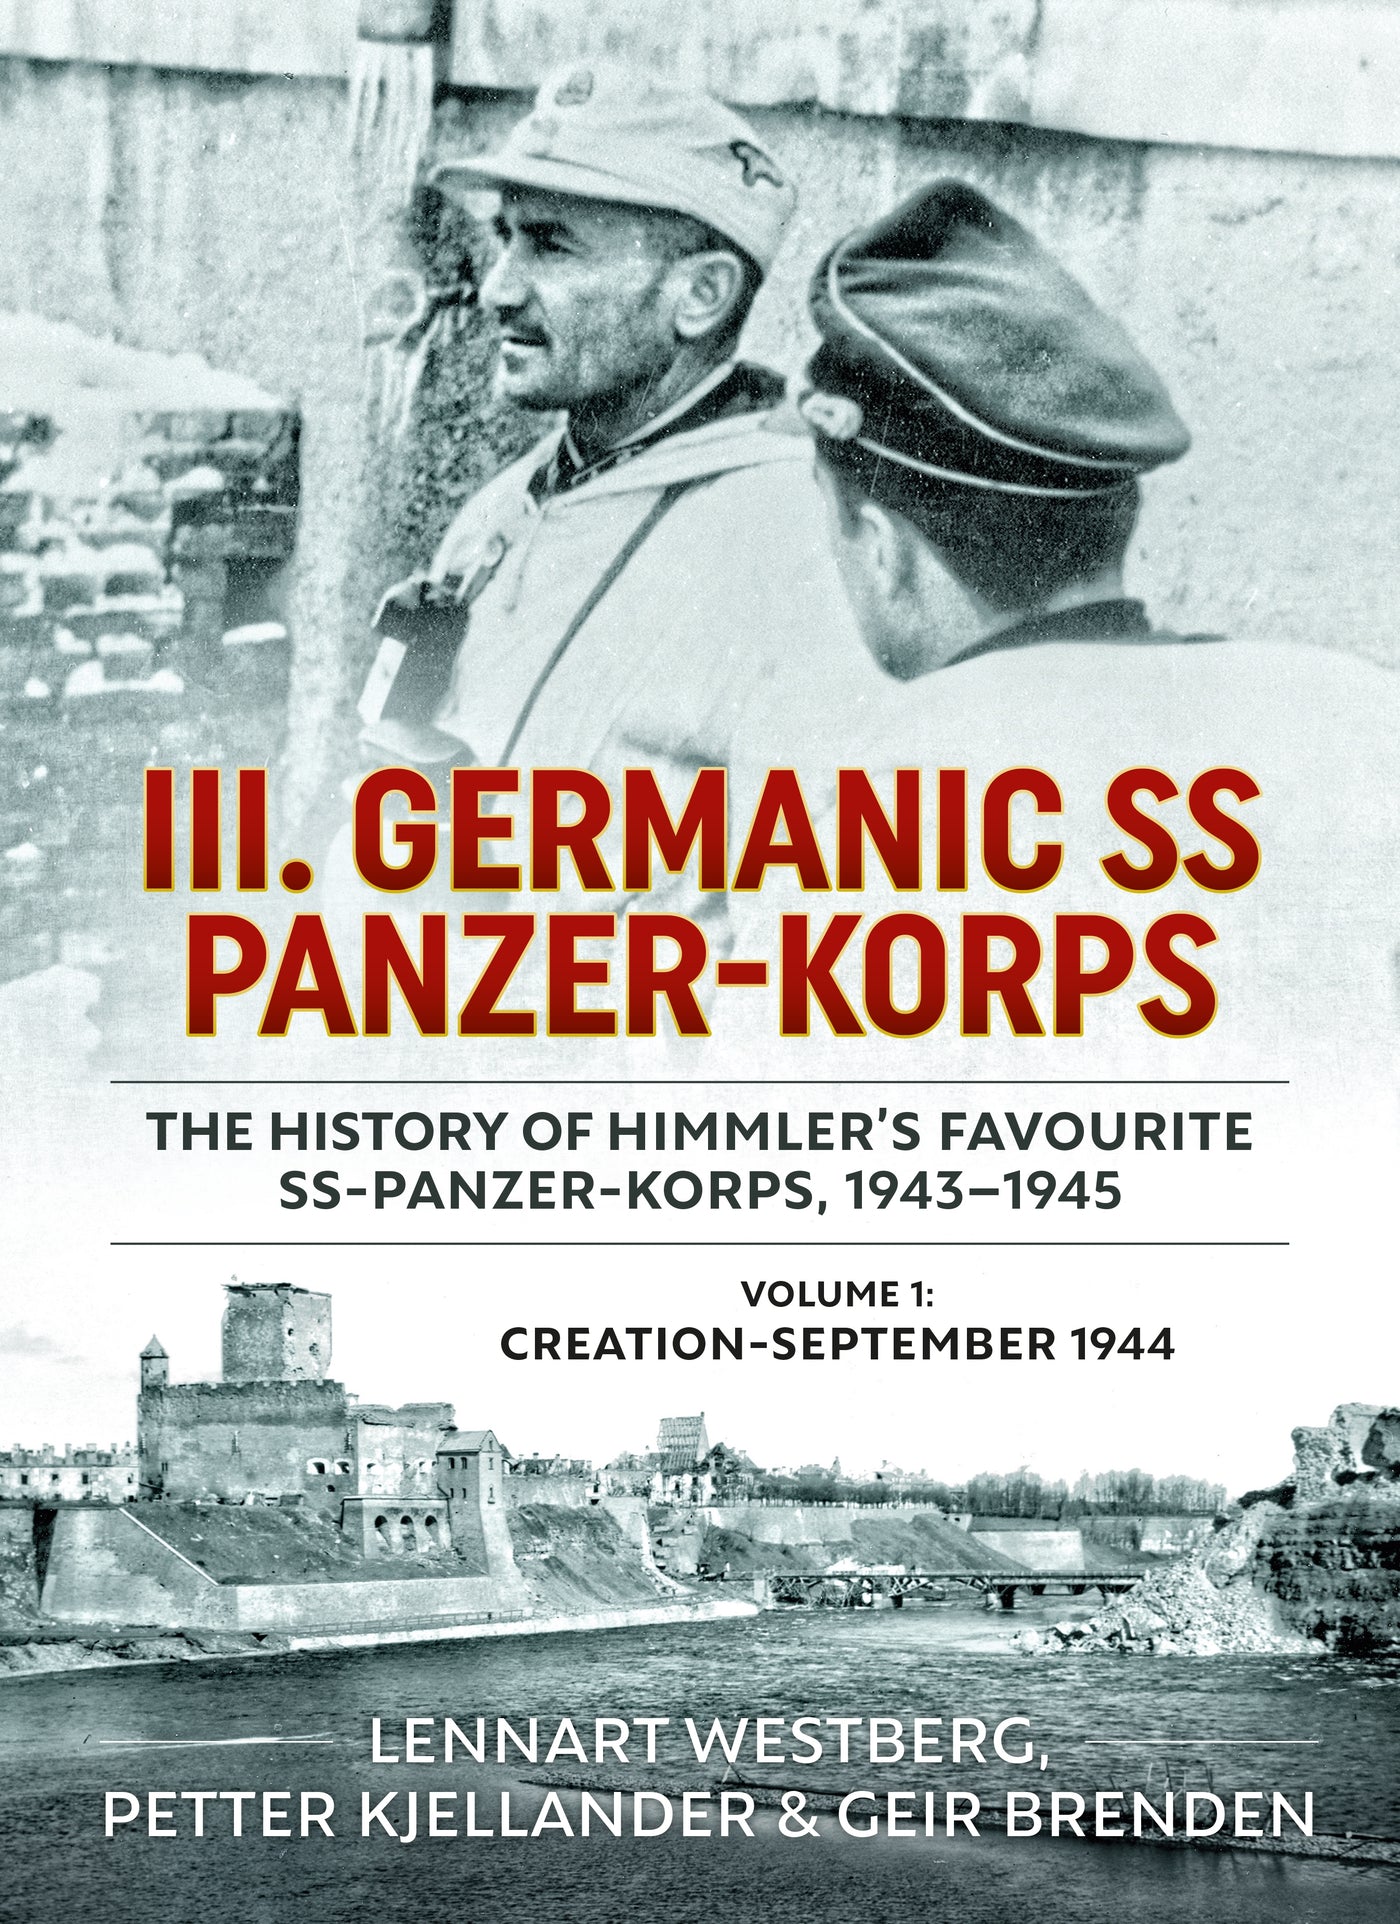 III Germanisches SS-Panzerkorps